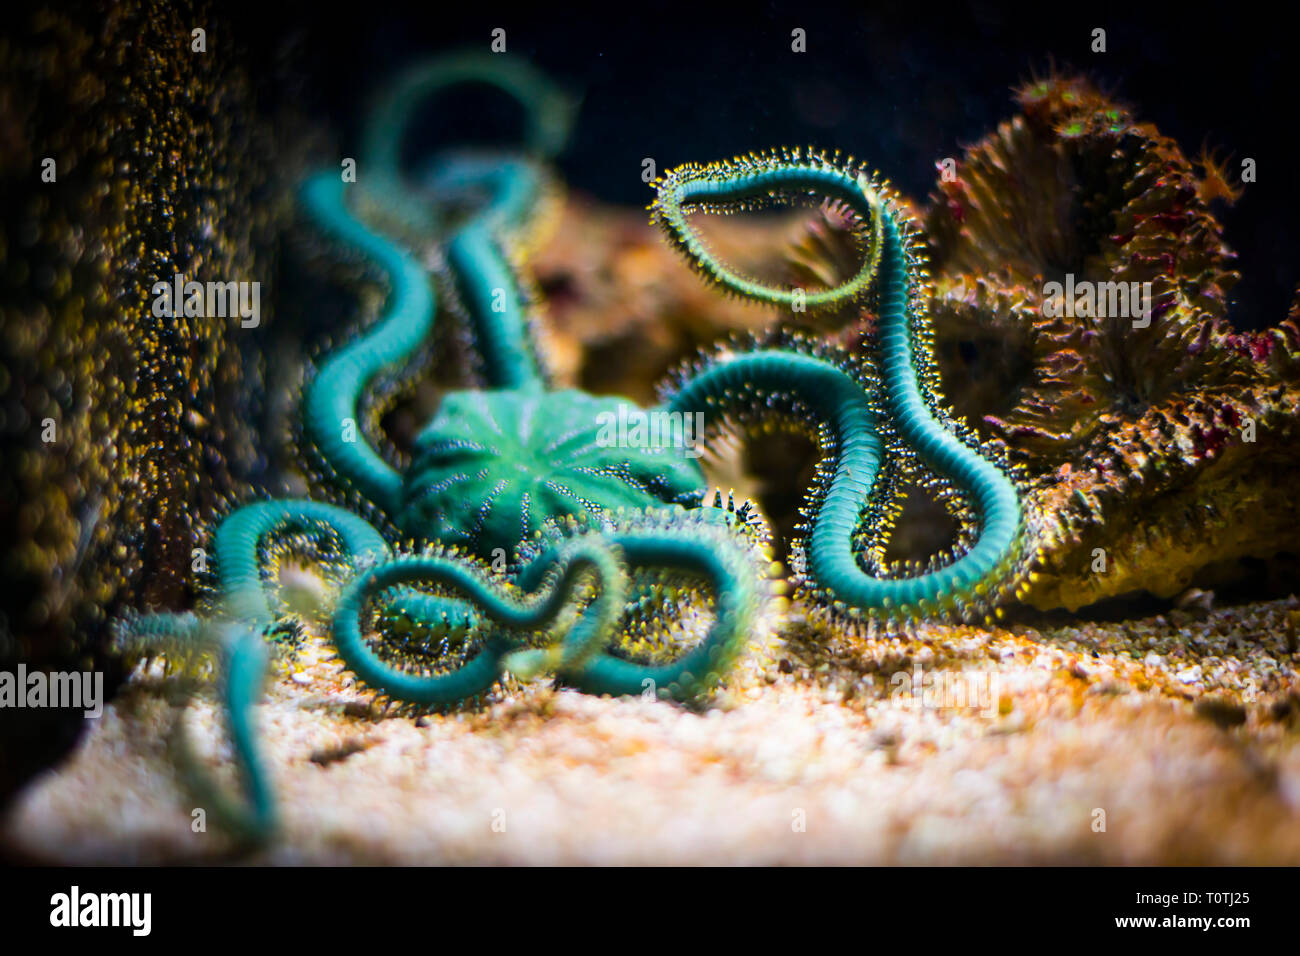 Brittle star in aquarium (Ophiuroidea) Stock Photo